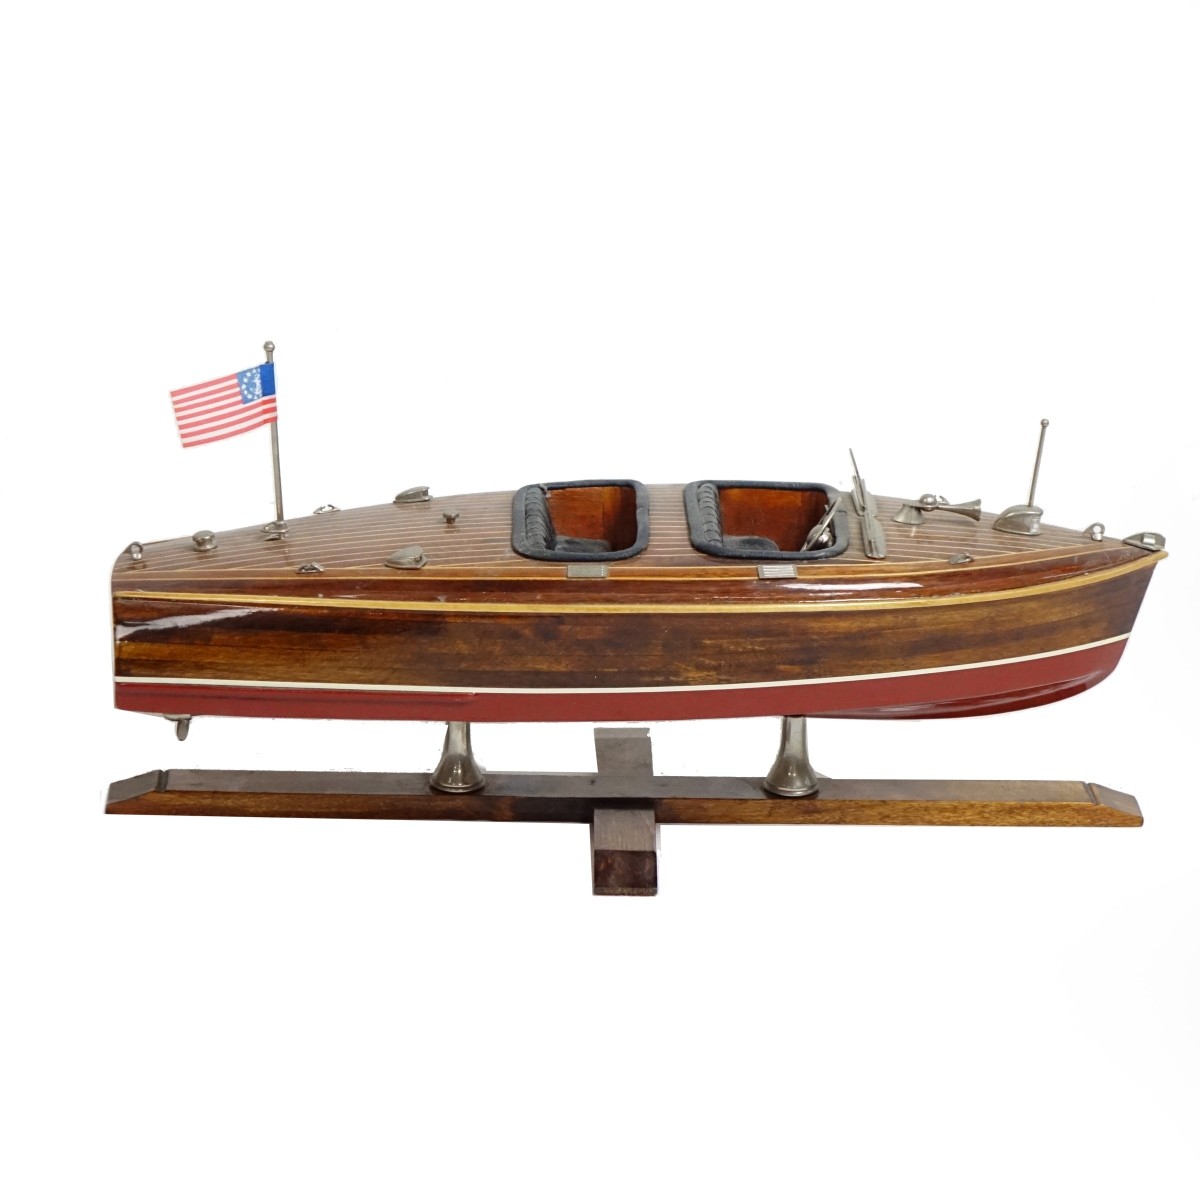 Speed Boat Model